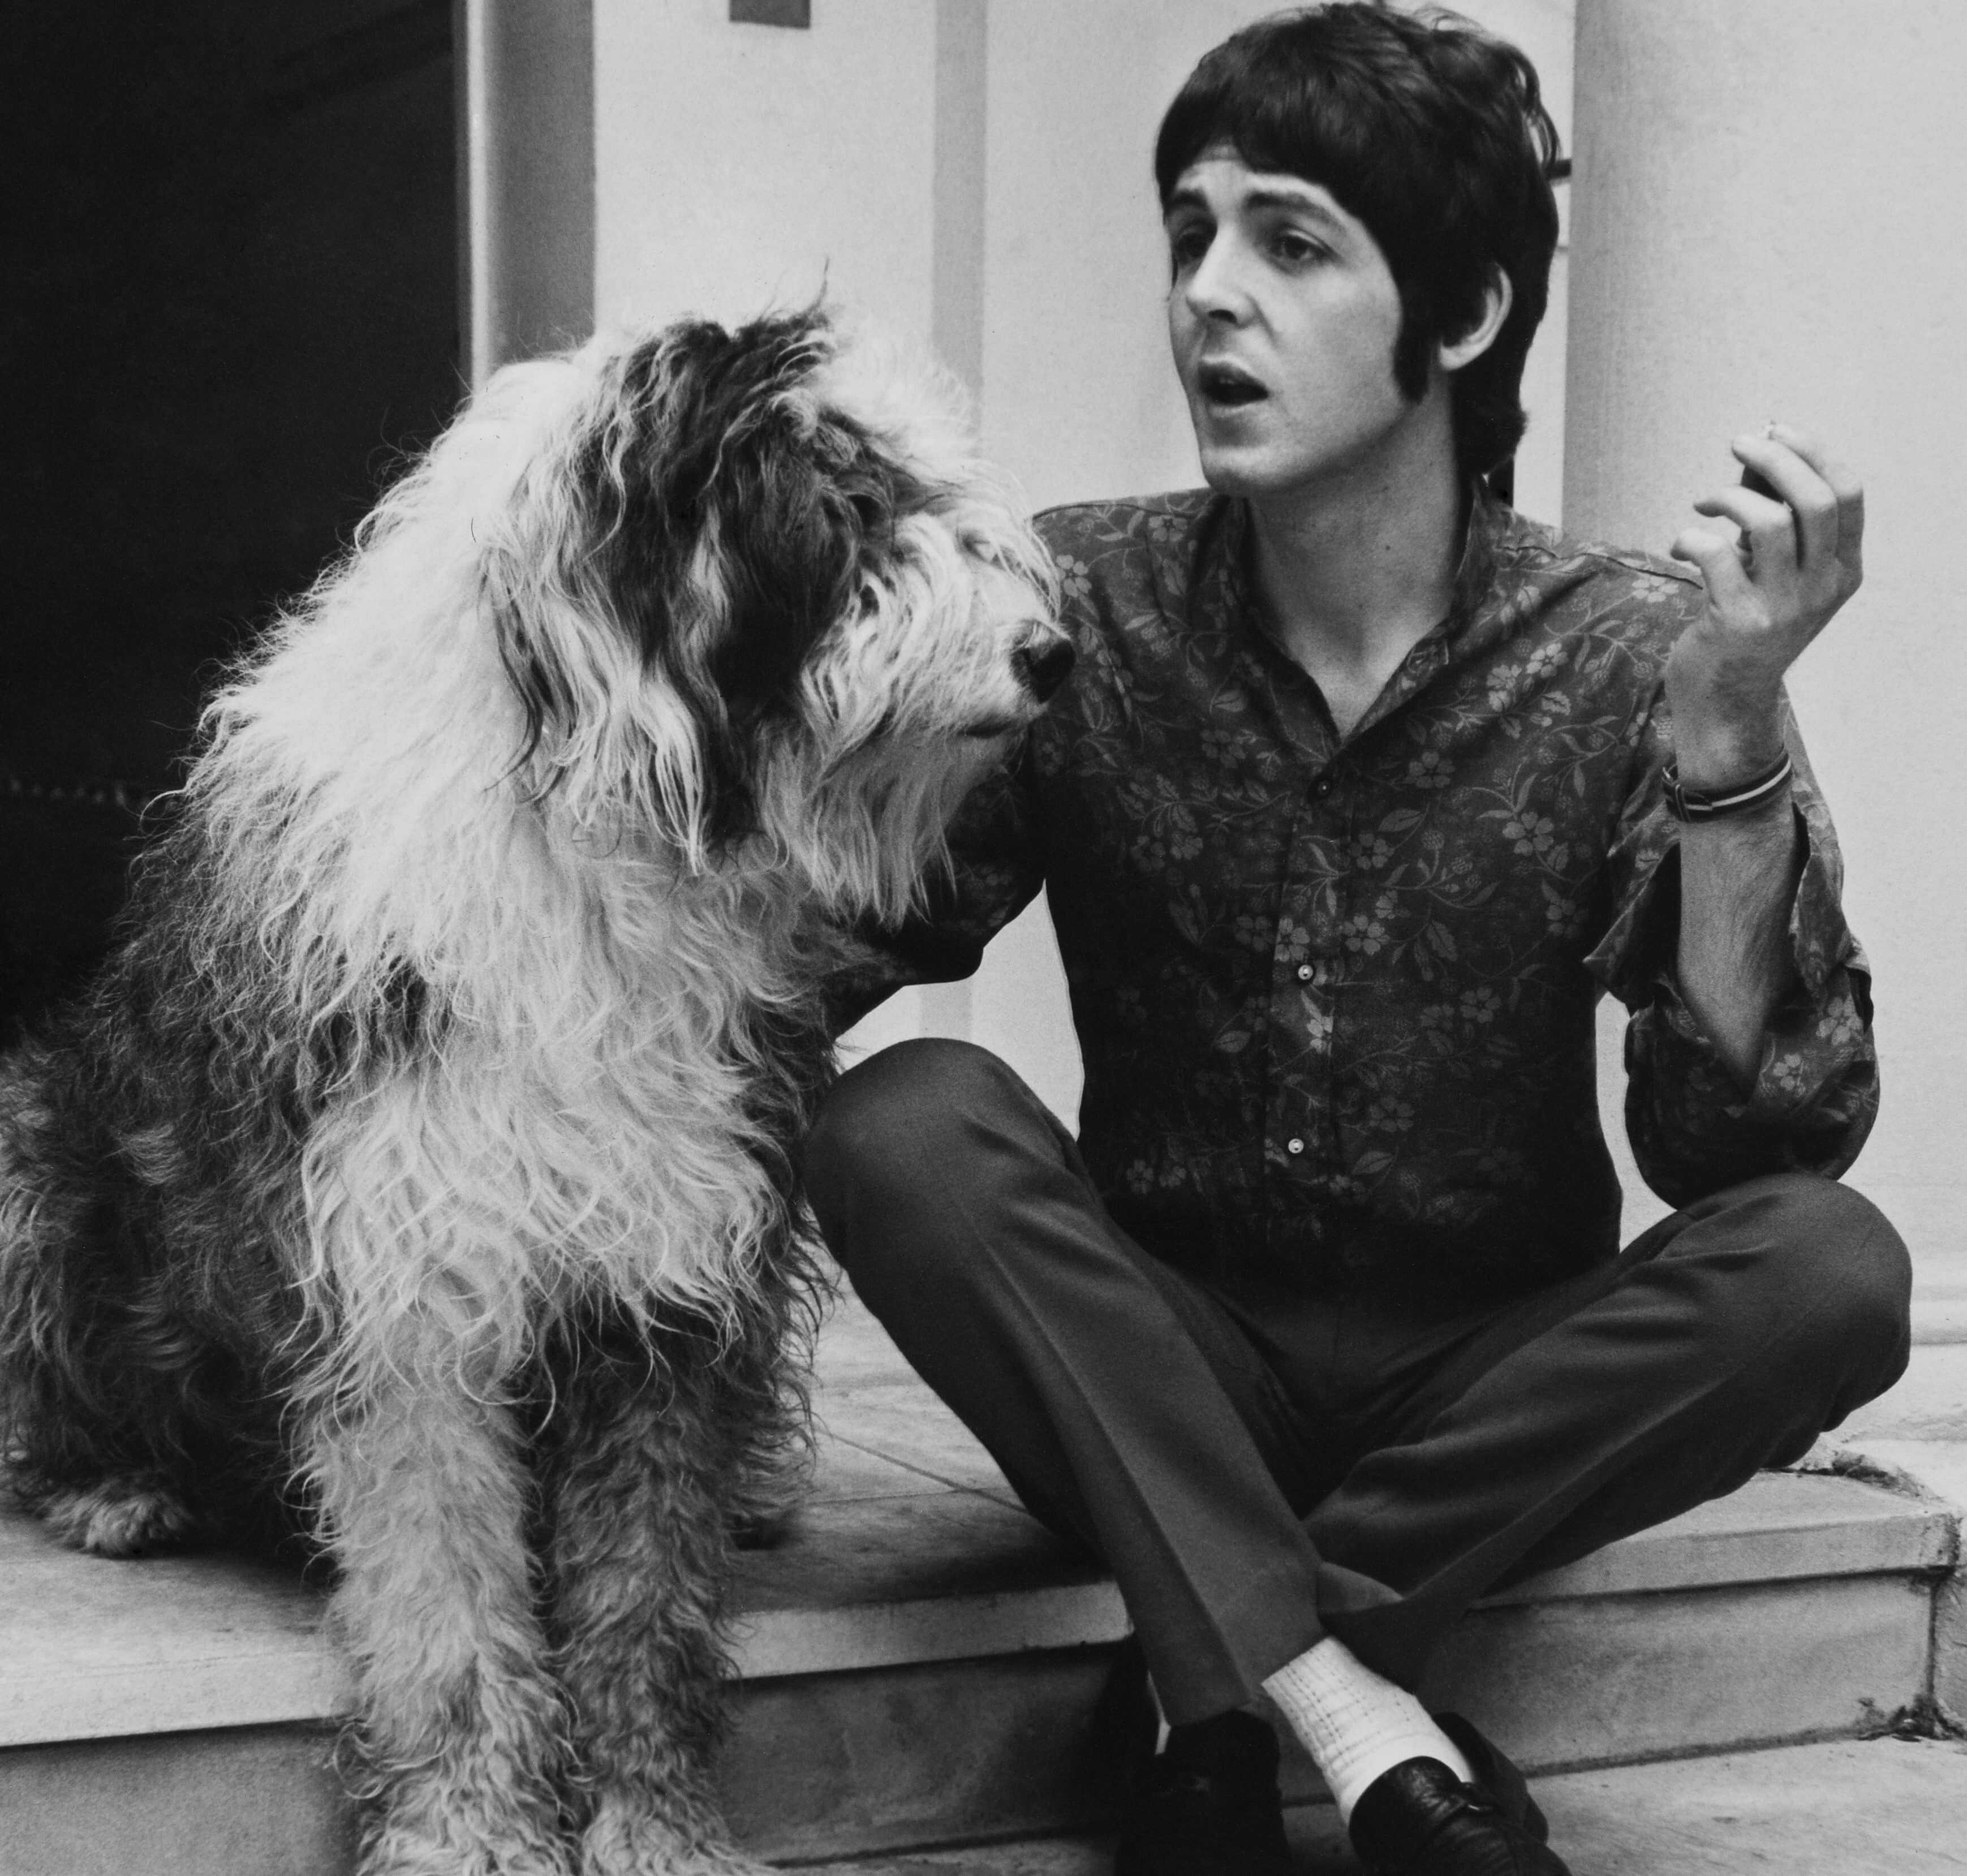 Paul McCartney with a dog